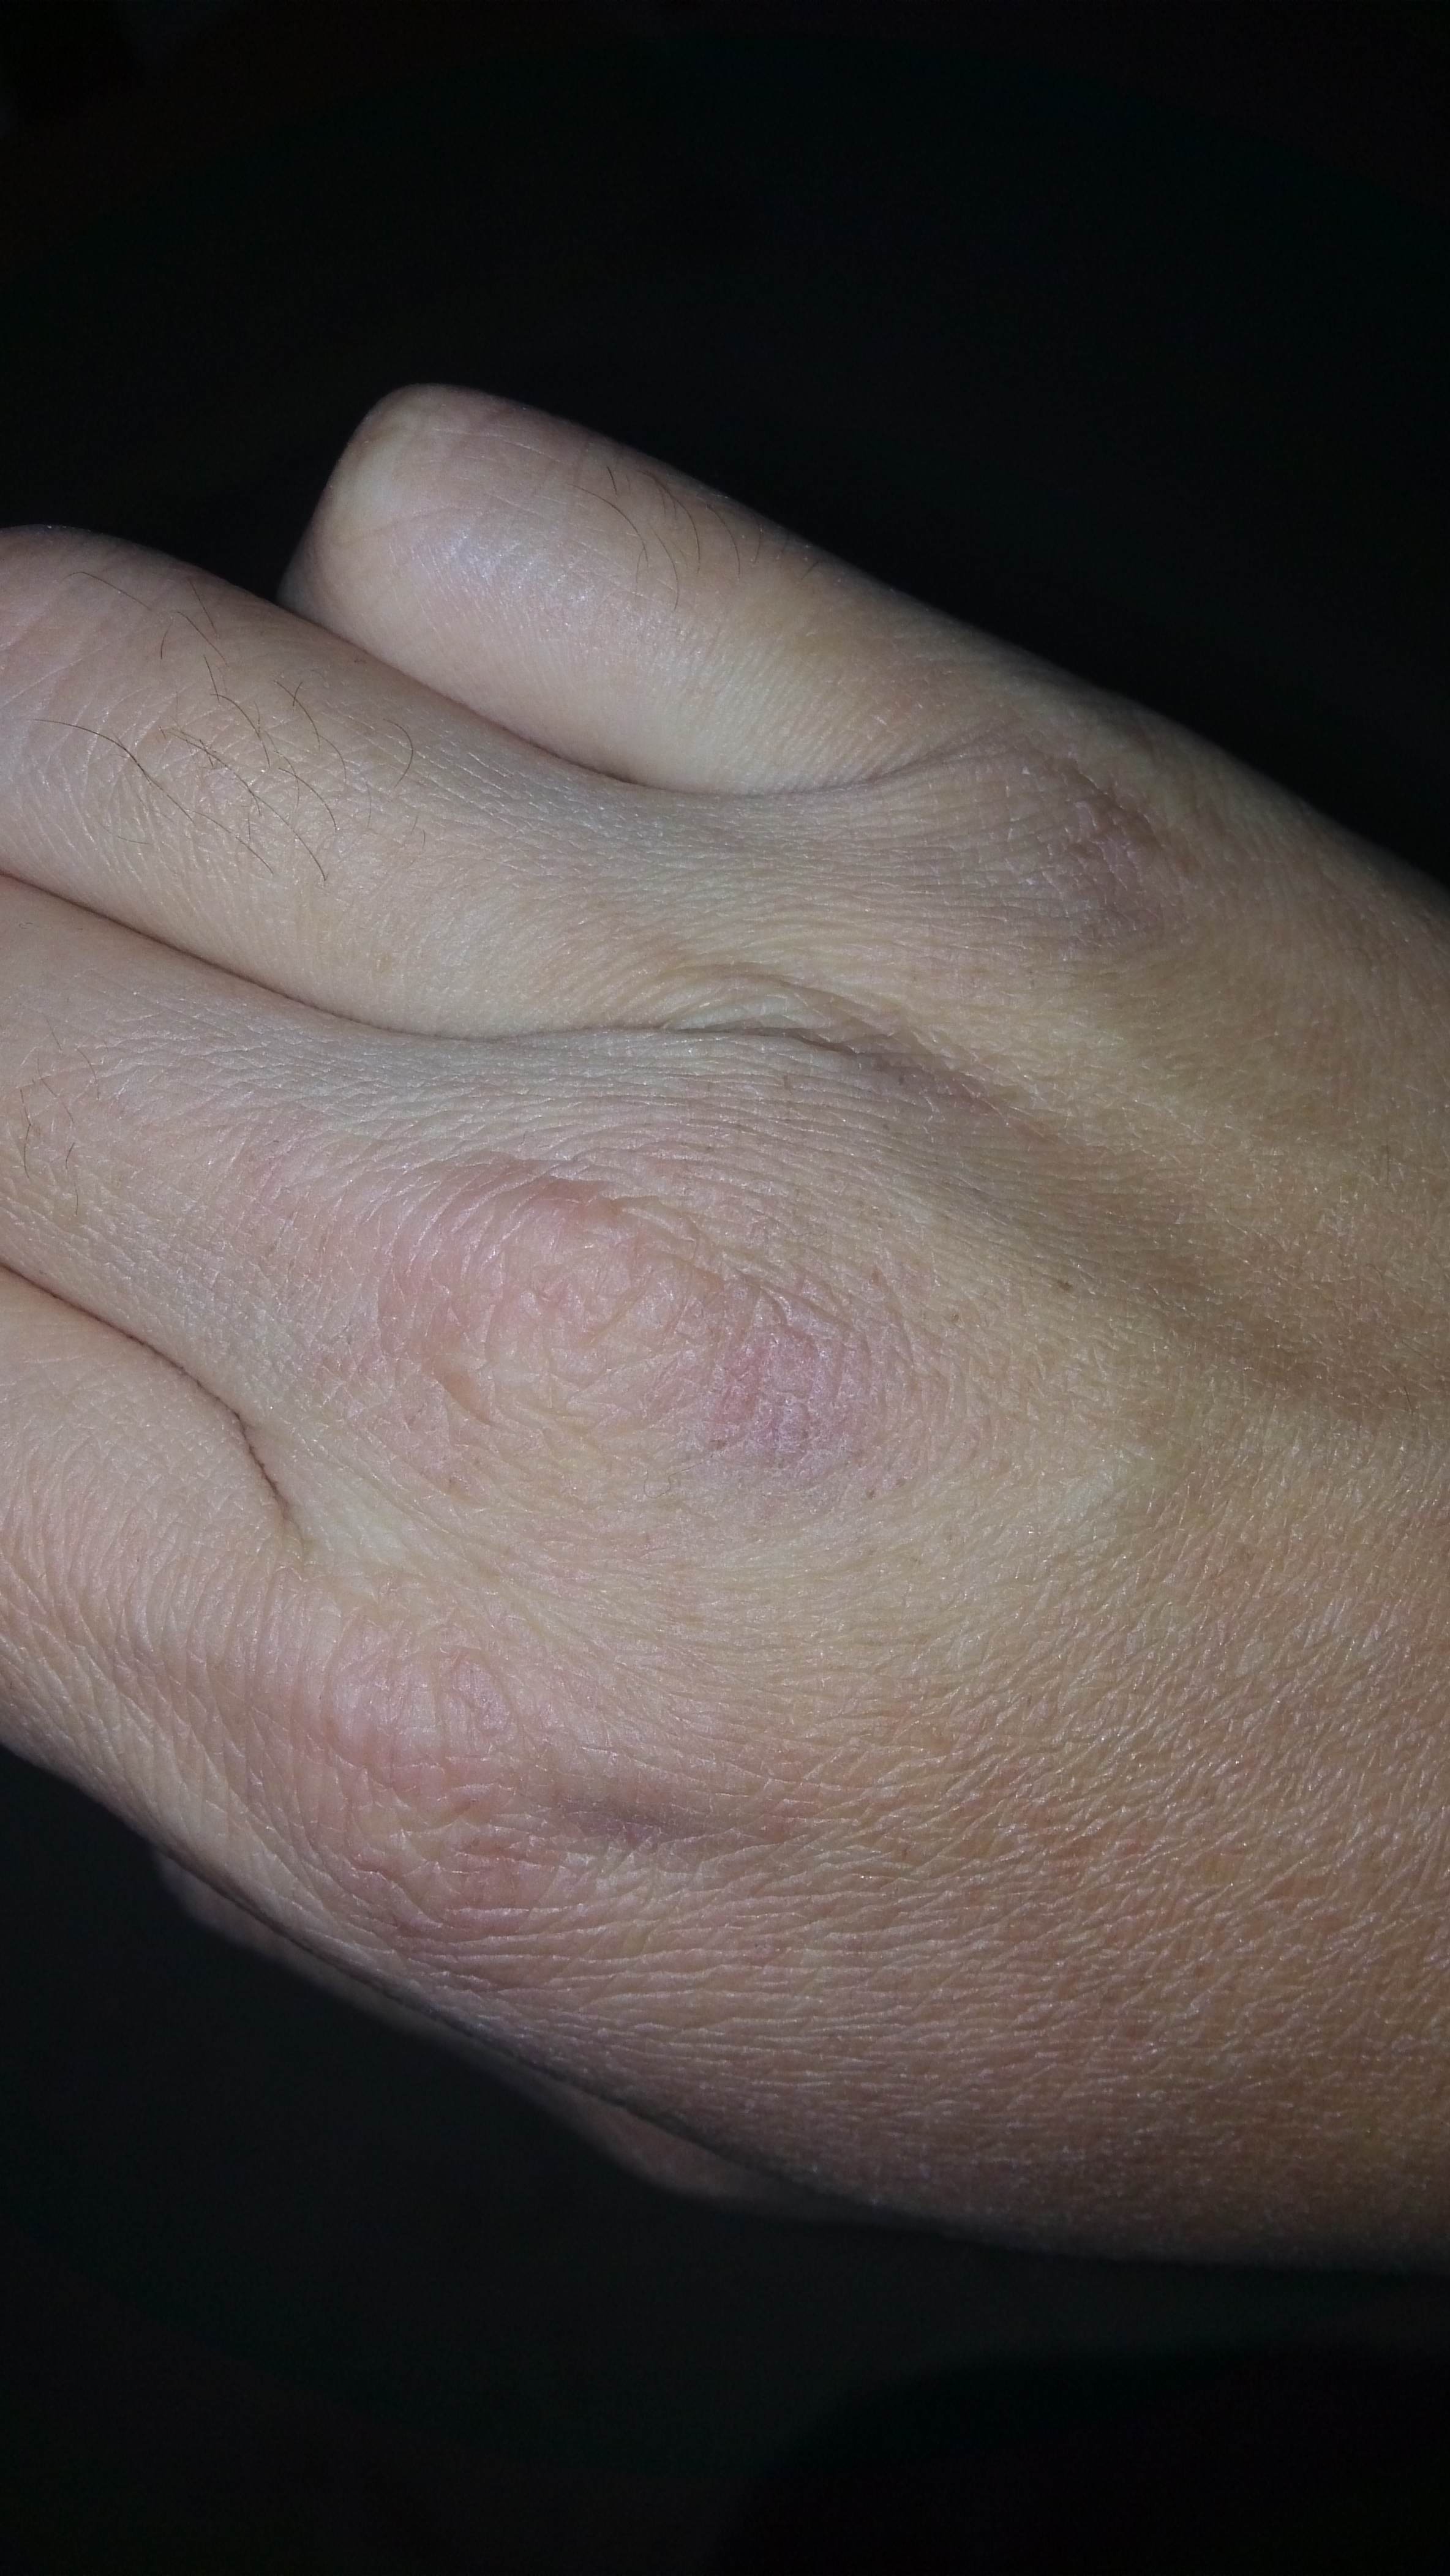 请医生看下我手背的干裂和红点，这是被冻的还是一种皮疹